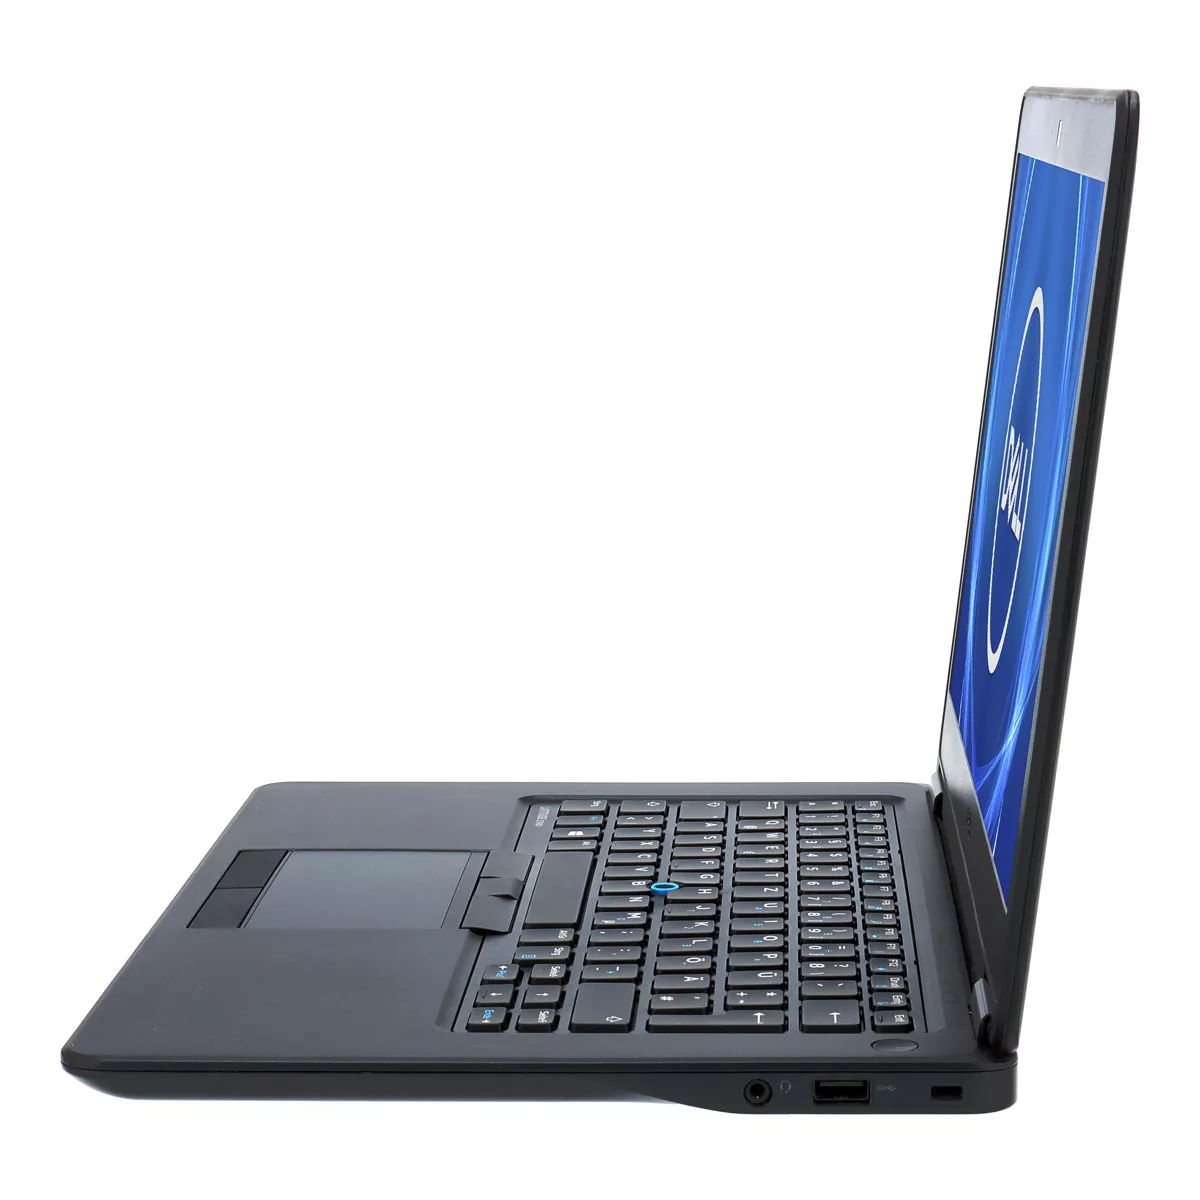 Dell Latitude E7450 Core i7 5600U Full-HD 8 GB 240 GB SSD Webcam A+